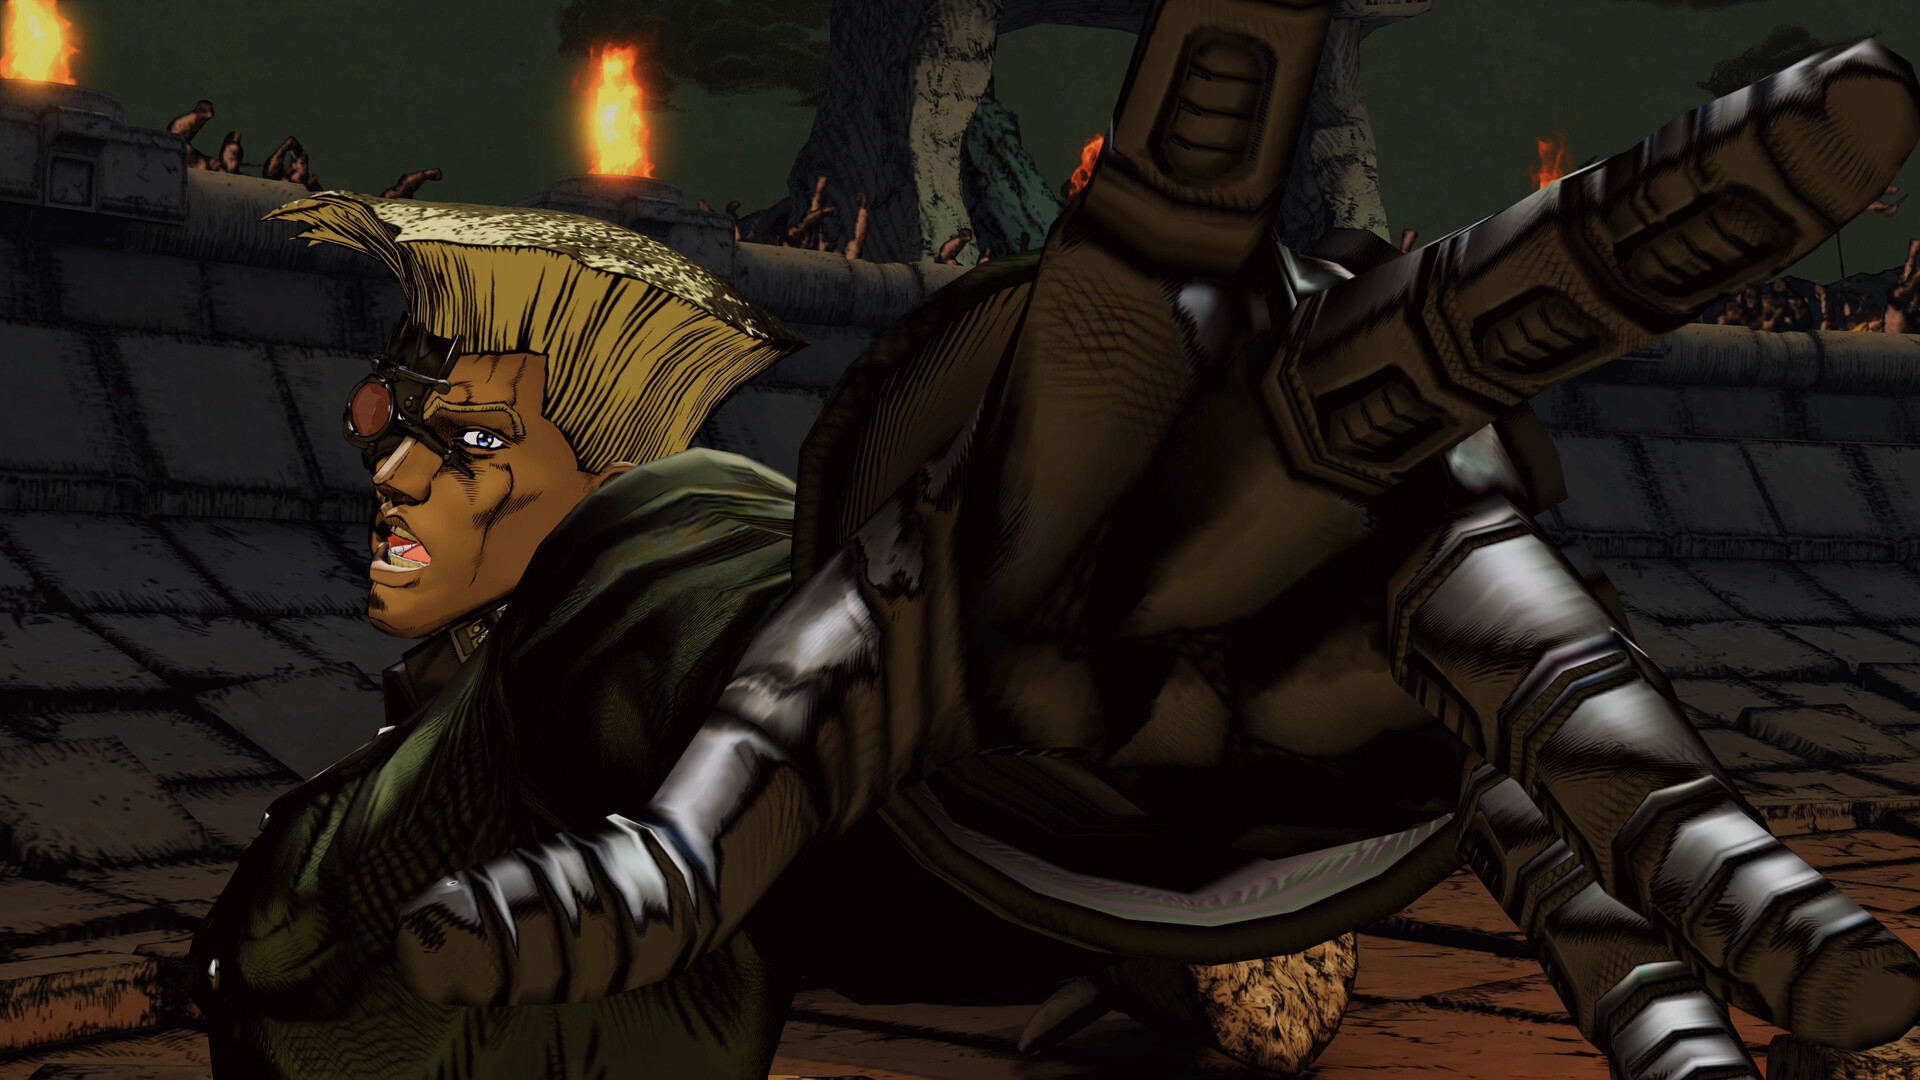 JoJo's Bizarre Adventure: All-Star Battle R - Rudol von Stroheim DLC Featured Screenshot #1